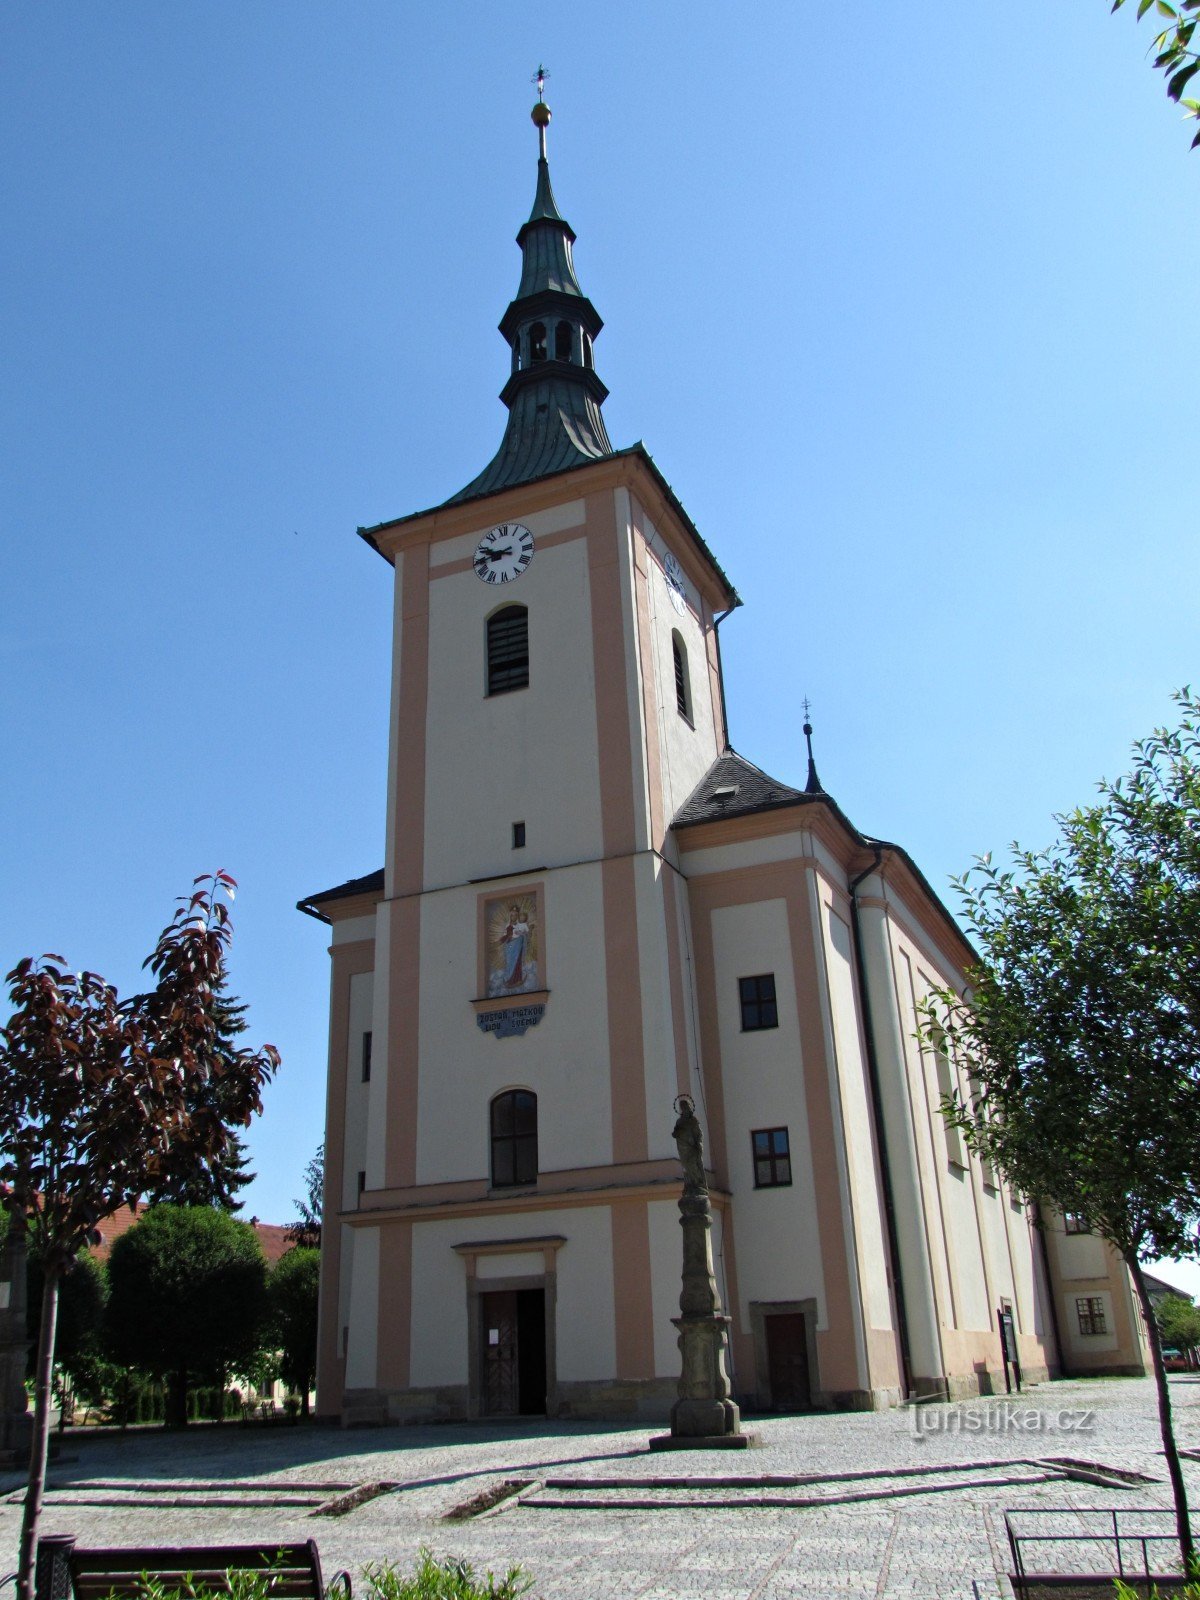 Drahotuše - Pyhän Laurentiuksen seurakuntakirkko